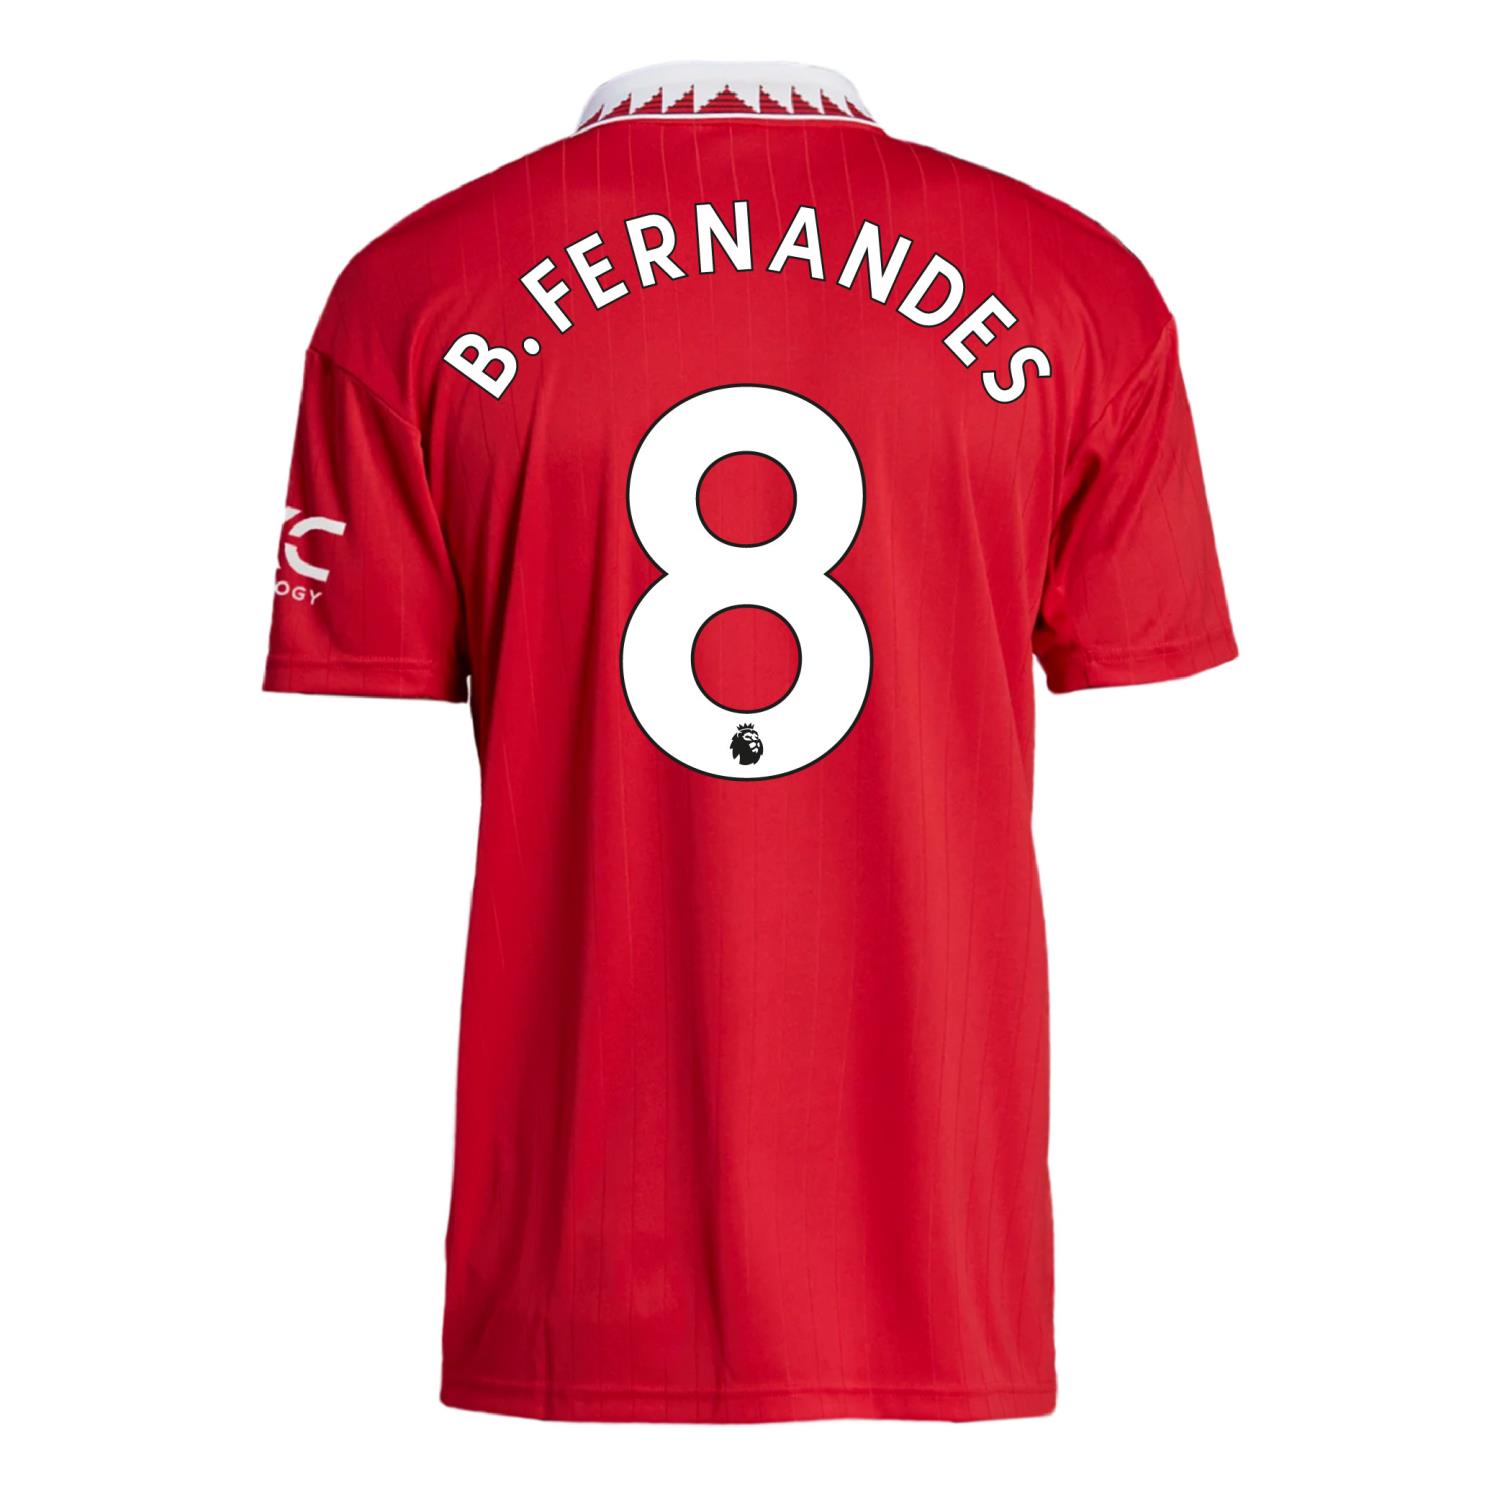 B.Fernandes nr 8 Premier League trkk (navn og tall)